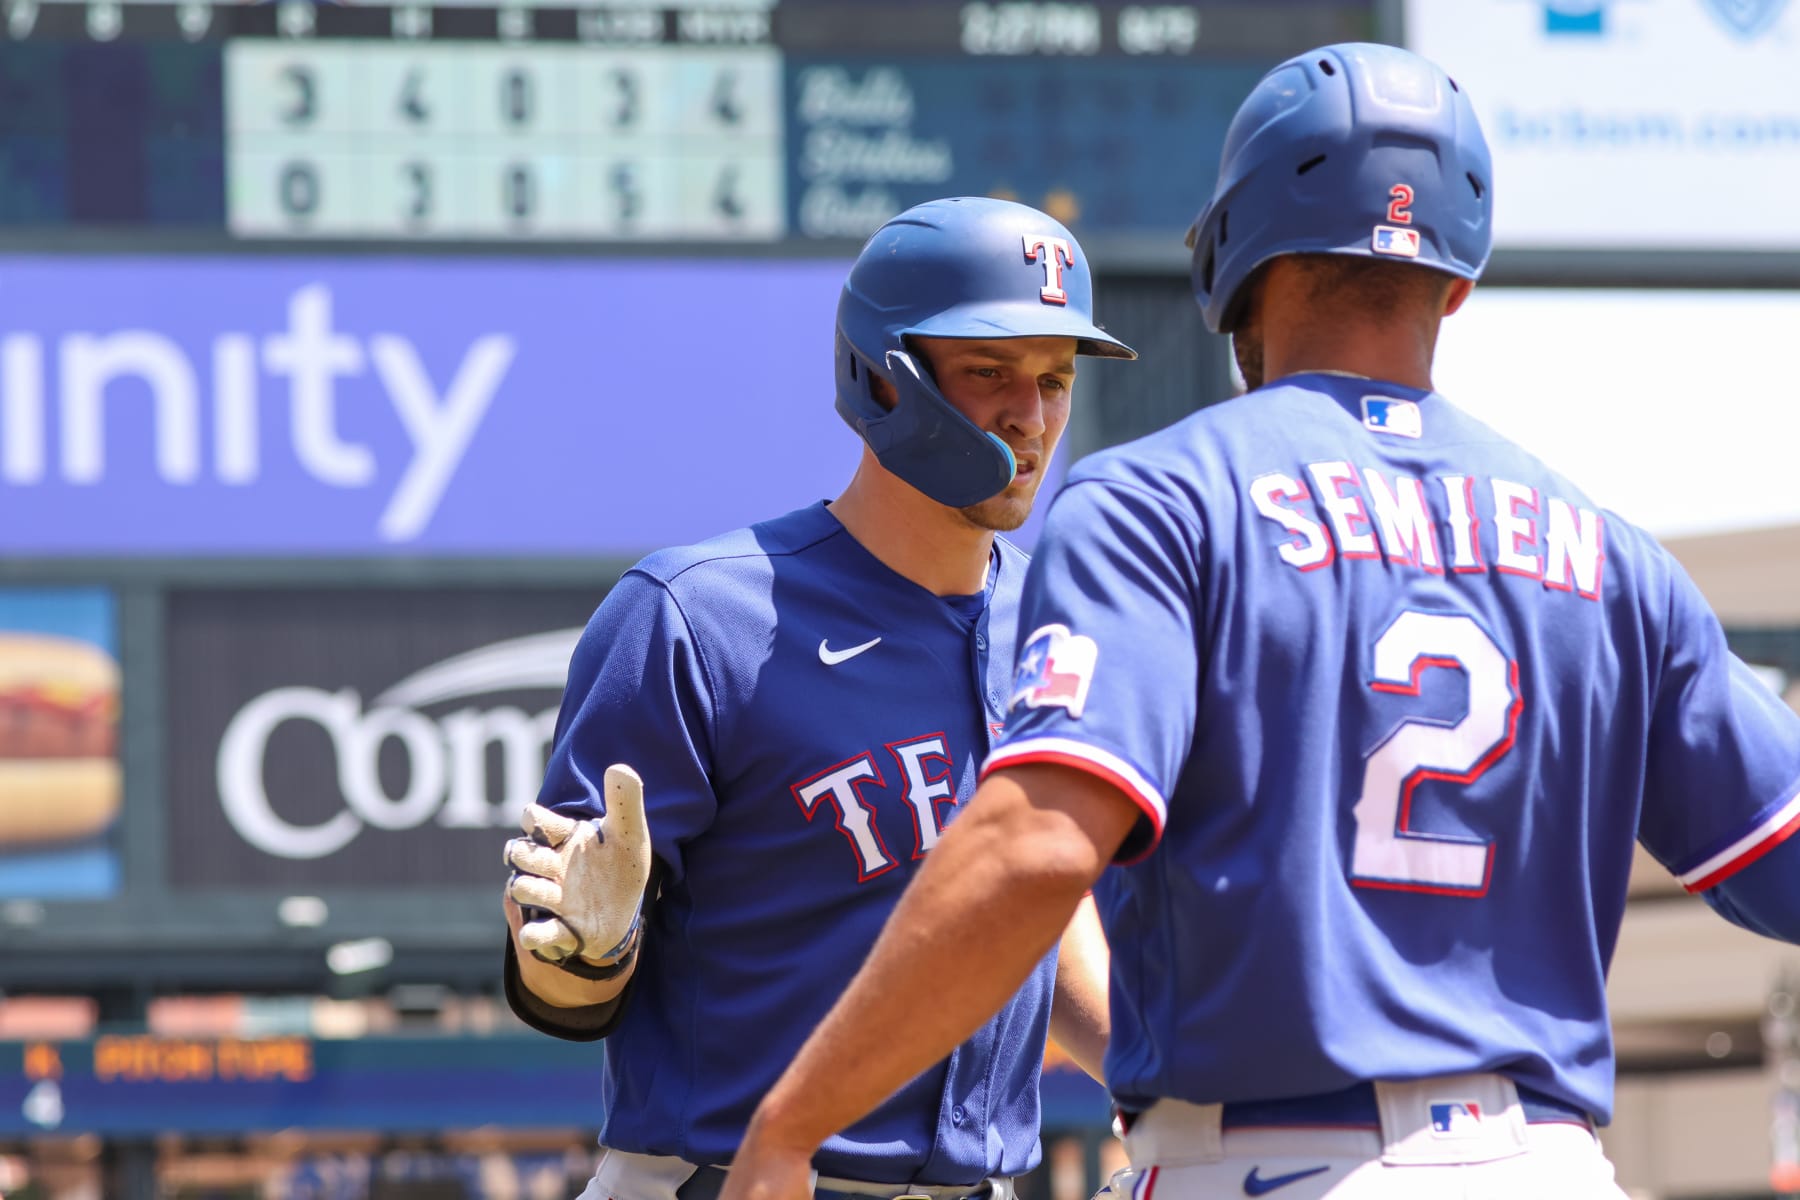 4 Texas Rangers chosen as All-Star starters